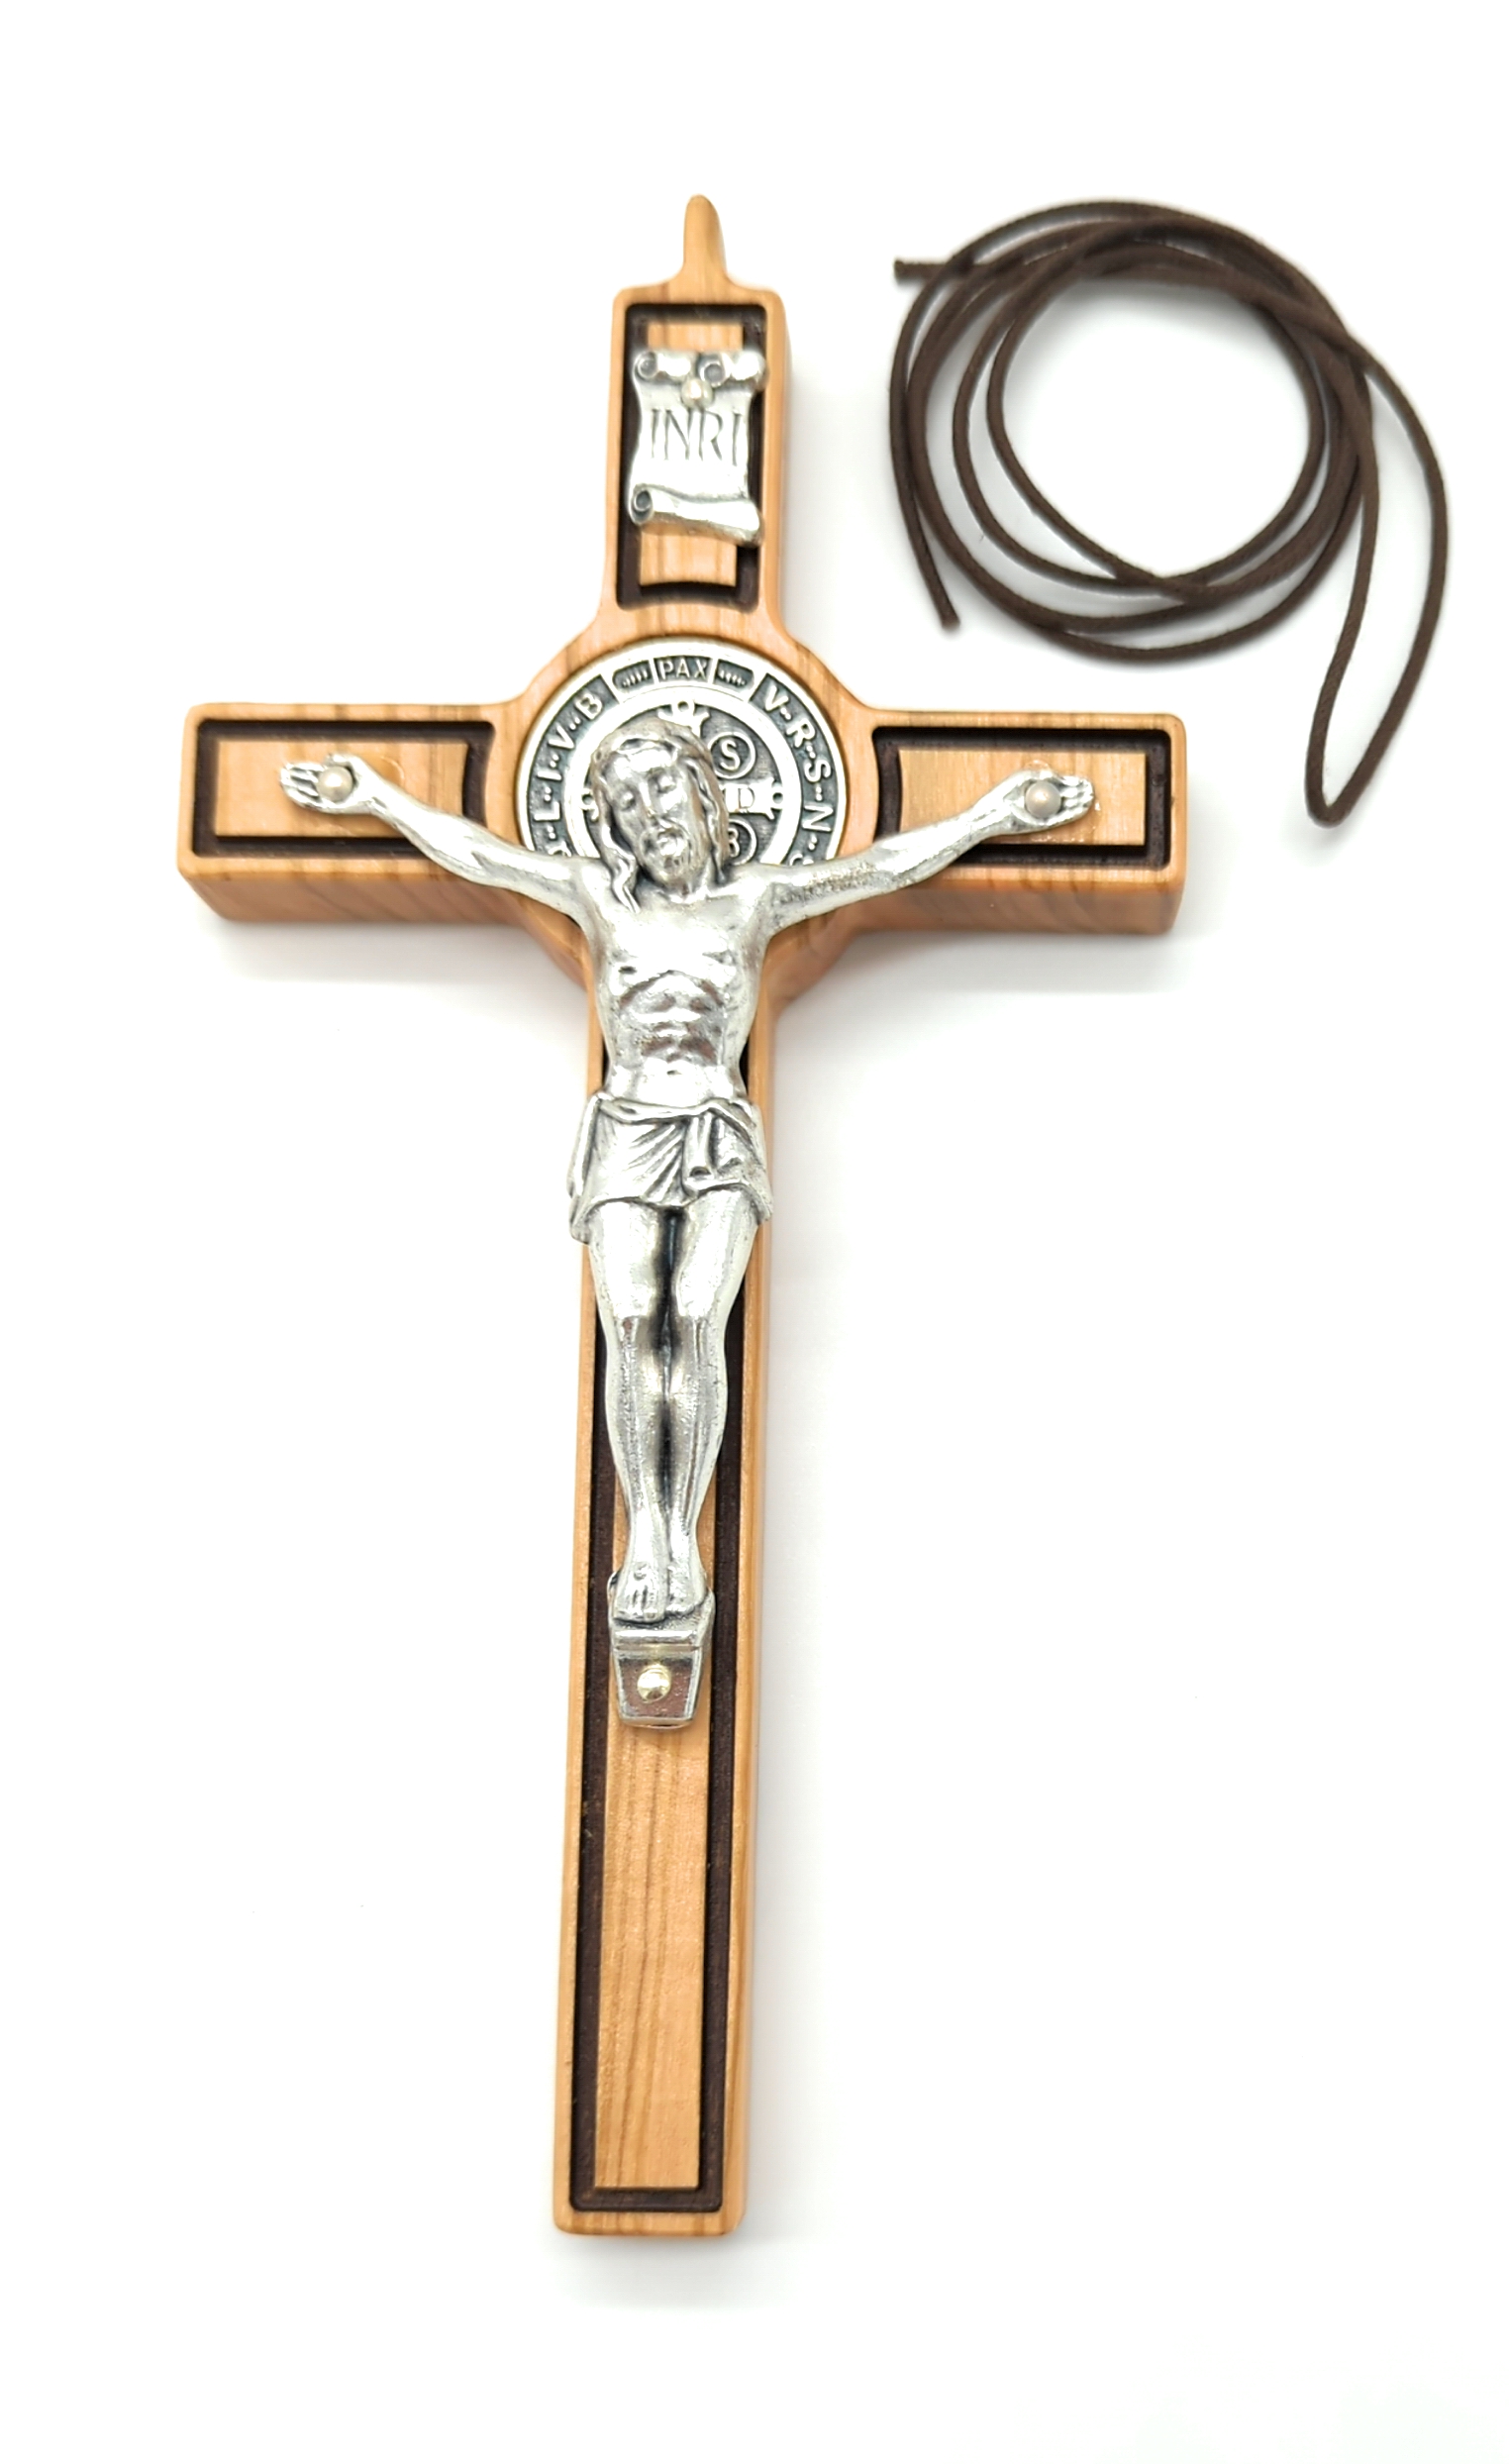 Croce di S. Benedetto  Immagini religiose, Immagini, Croce